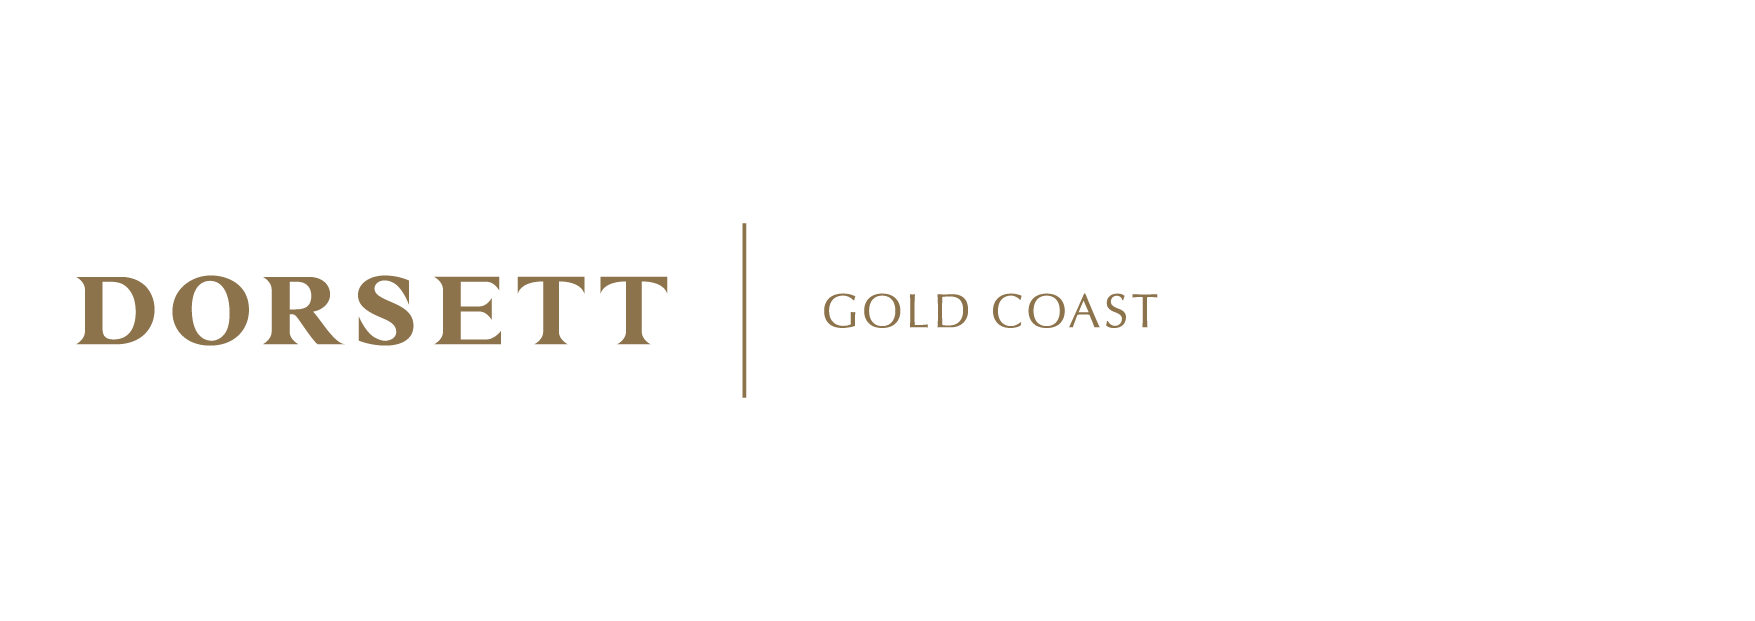 黃金海岸最佳酒店 | 澳洲 Dorsett Gold Coast Hotel